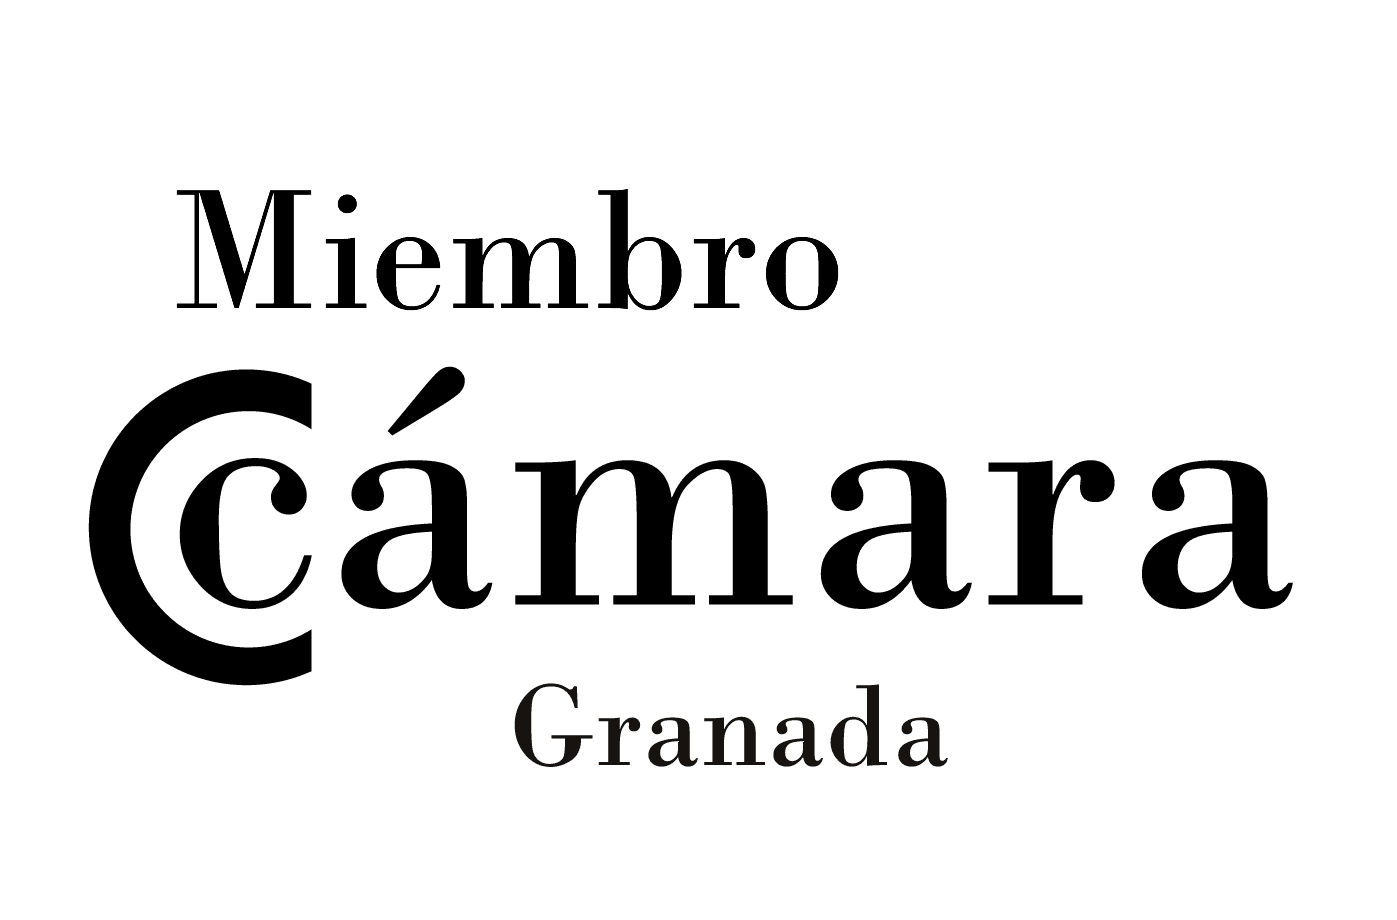 Associate member of the Granada Chamber of Commerce